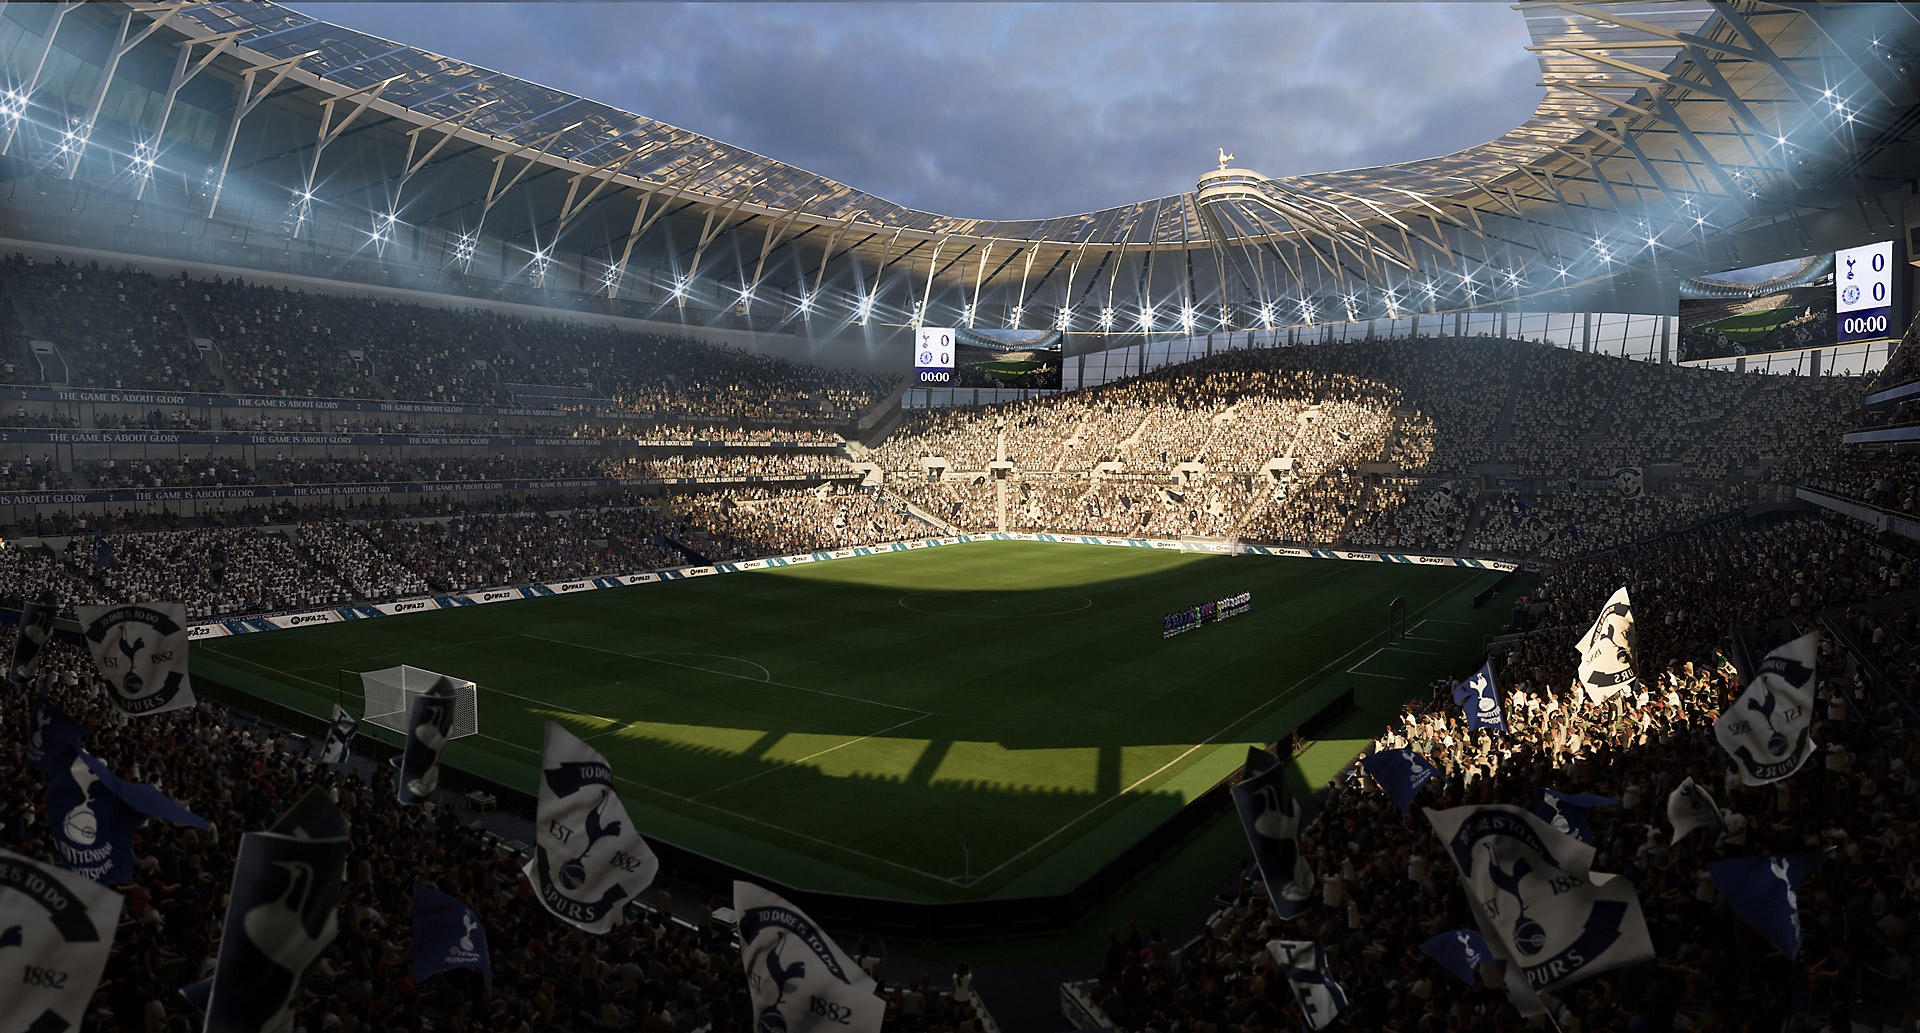 Skärmbild från EA Sports FIFA 23 som visar en fotbollsarena